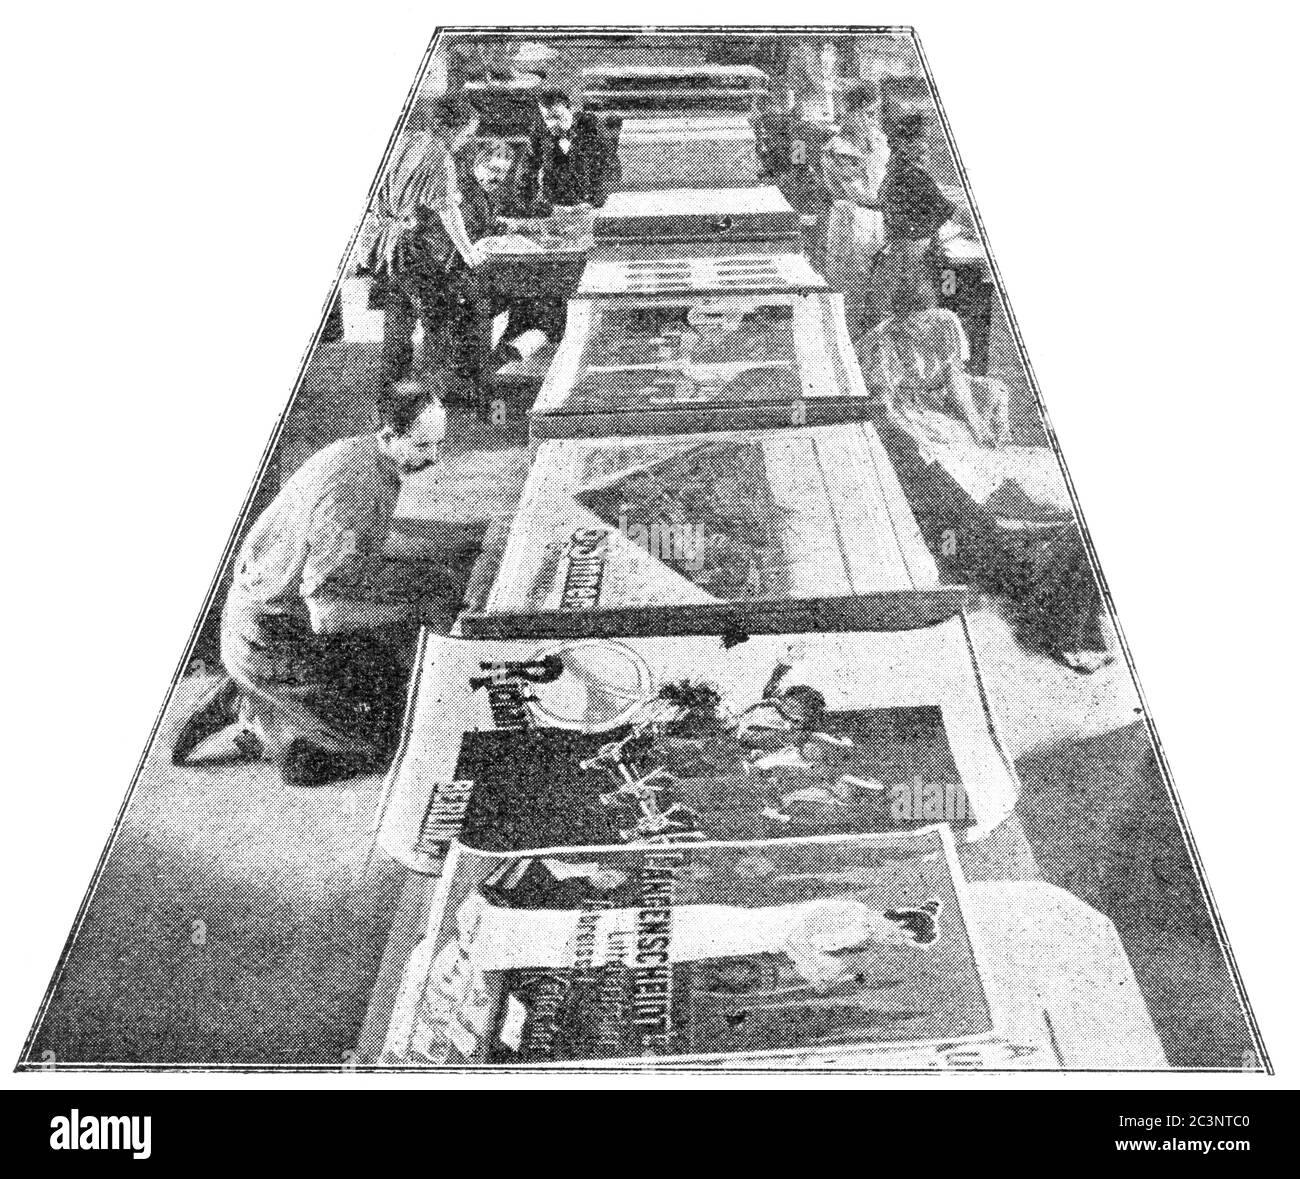 Transferdruck der Lithographie von Meisenbach Riffarth & Co. Illustration des 19. Jahrhunderts. Weißer Hintergrund. Stockfoto